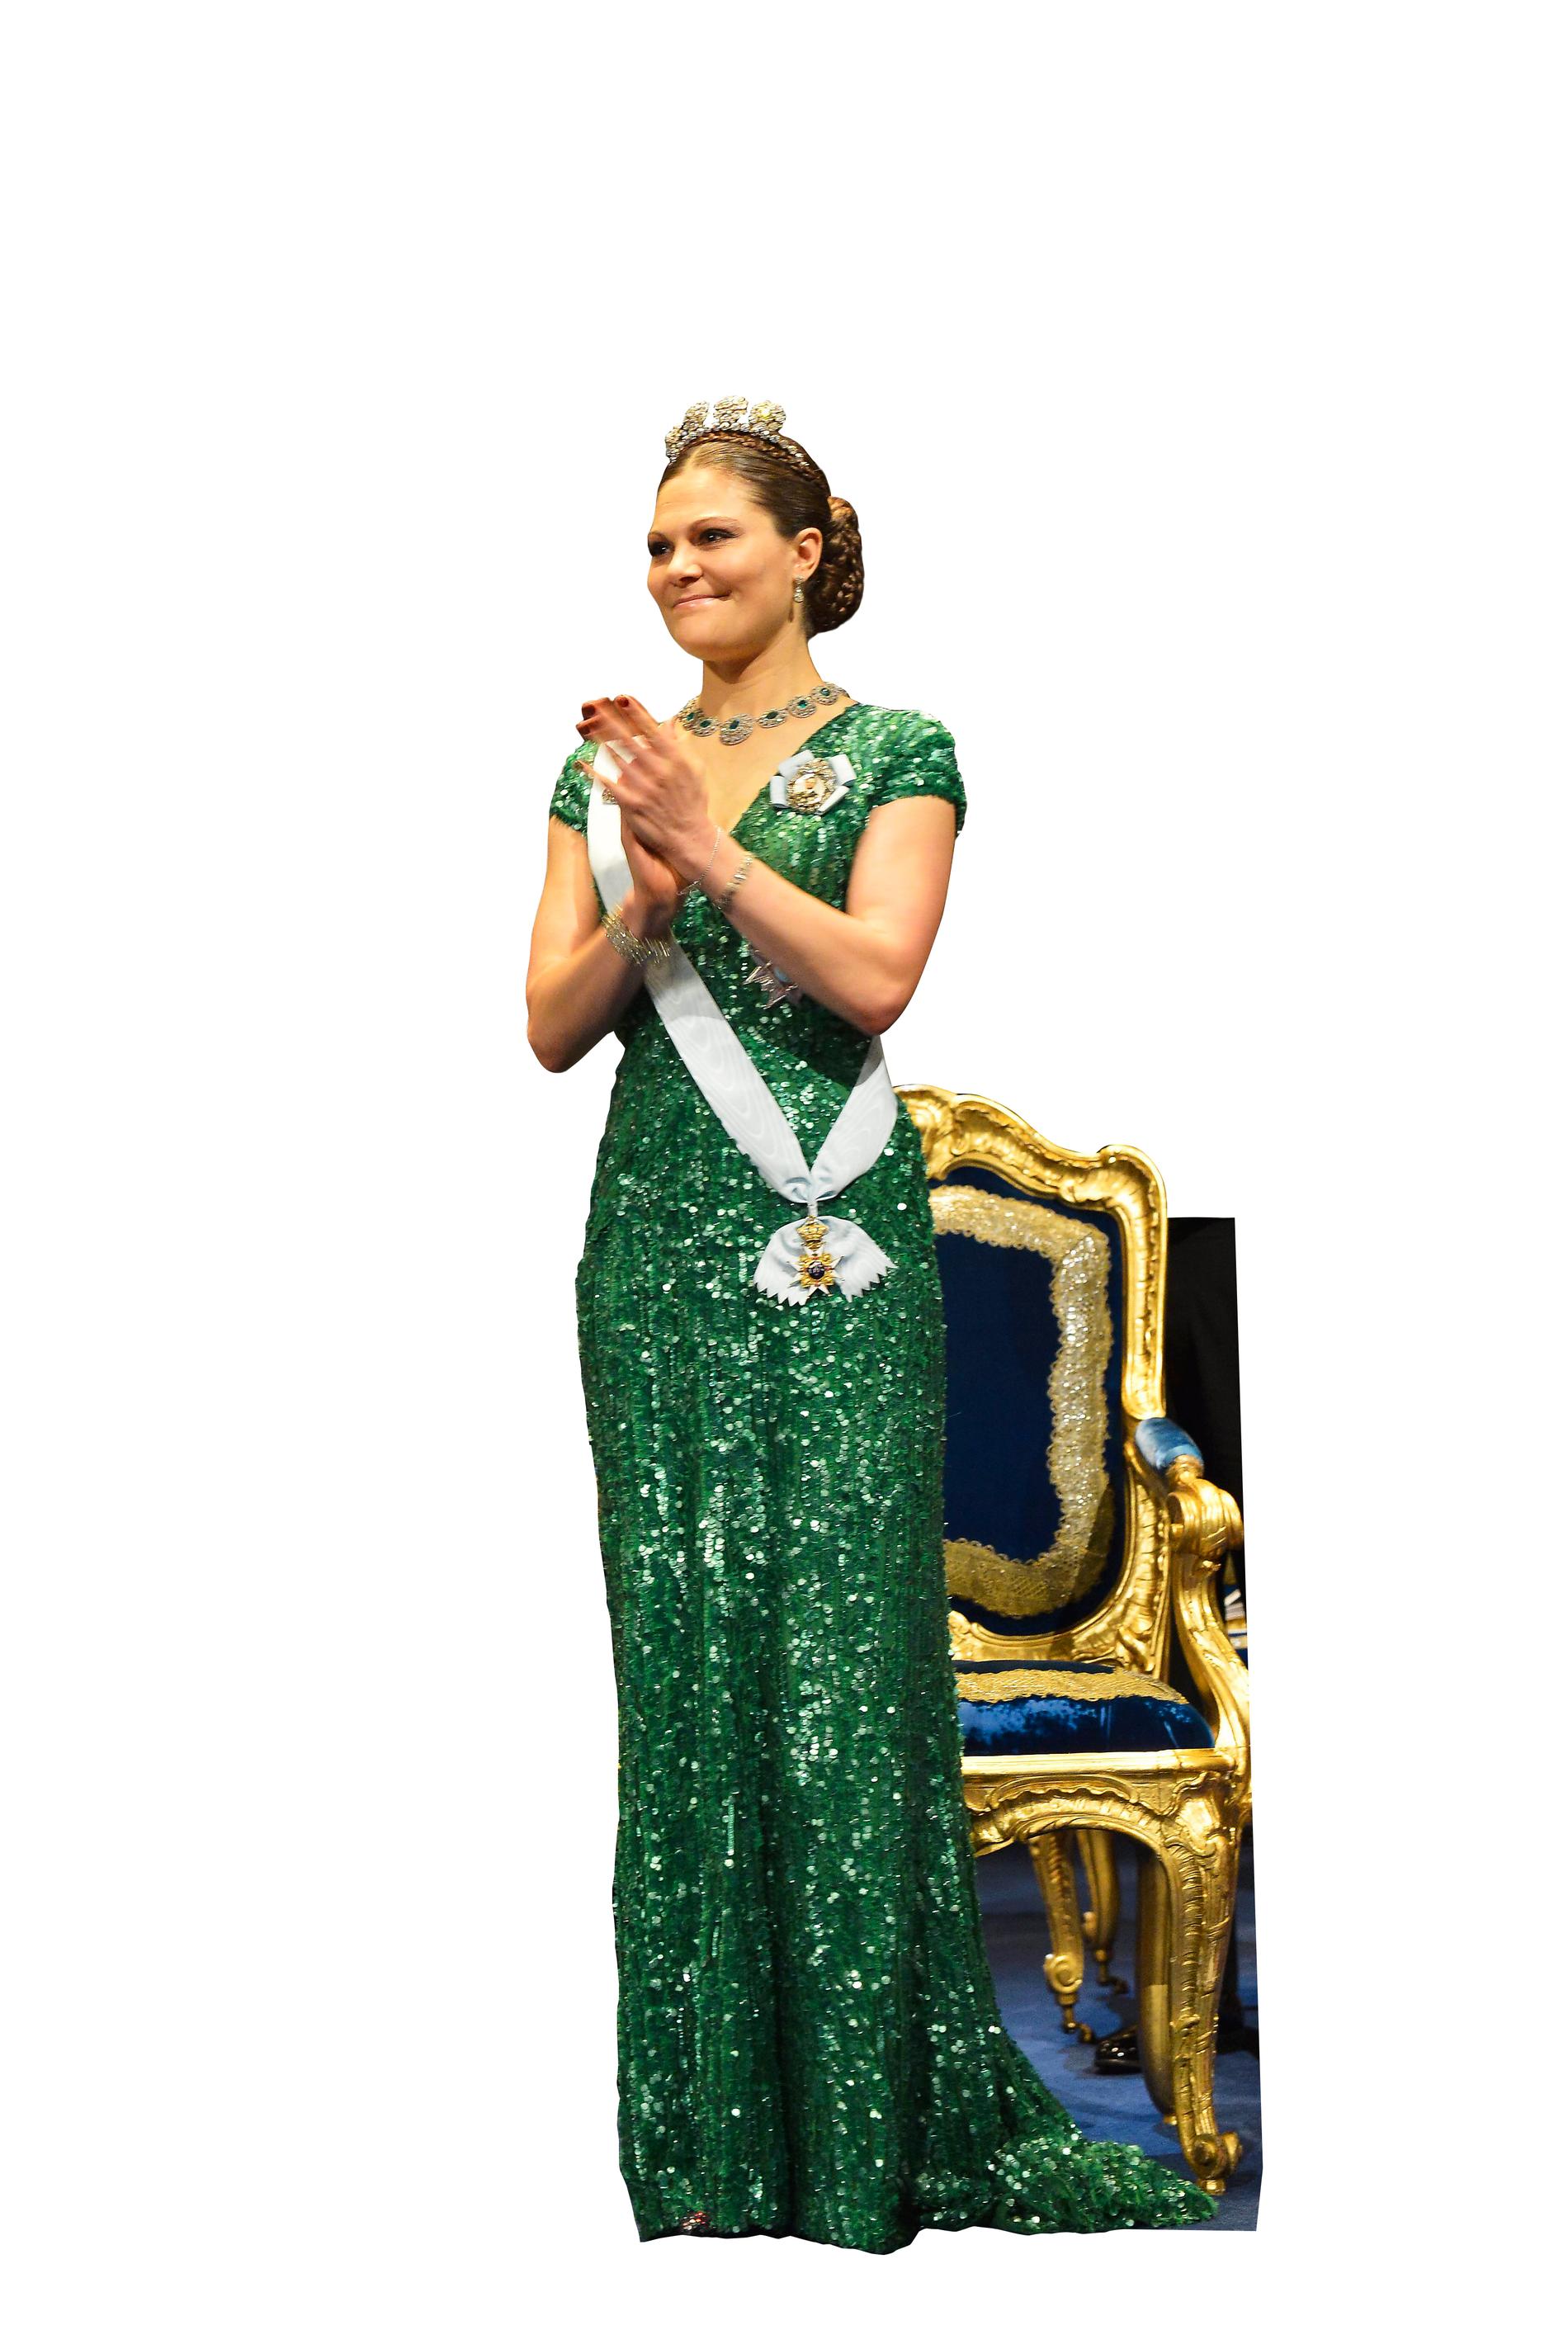 återanvänd. Den gröna paljettklänningen från Elie Saab har Victoria använt många gånger. Första gången hon bar den var på Nobelfesten 2012 och senast vid representationsmiddagen på Kungliga slottet för någon månad sedan.